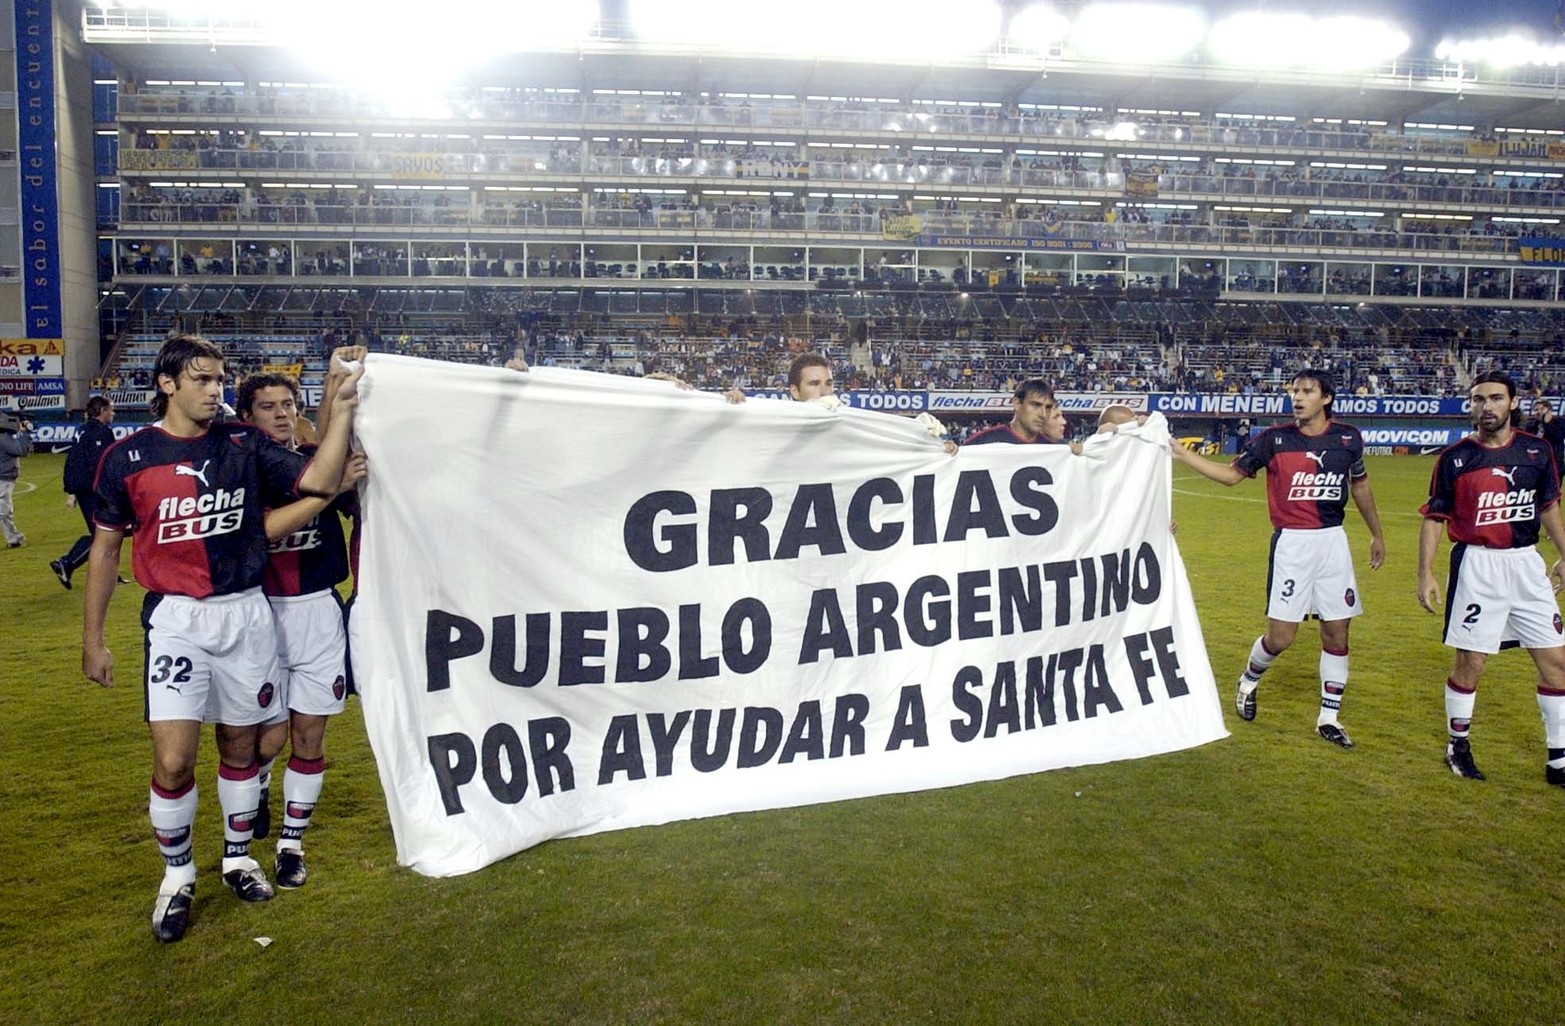 Domingo 11 de Mayo de 2003. Jugadores de Colón desplegaron una bandera antes de jugar con Boca en la Bombonera.